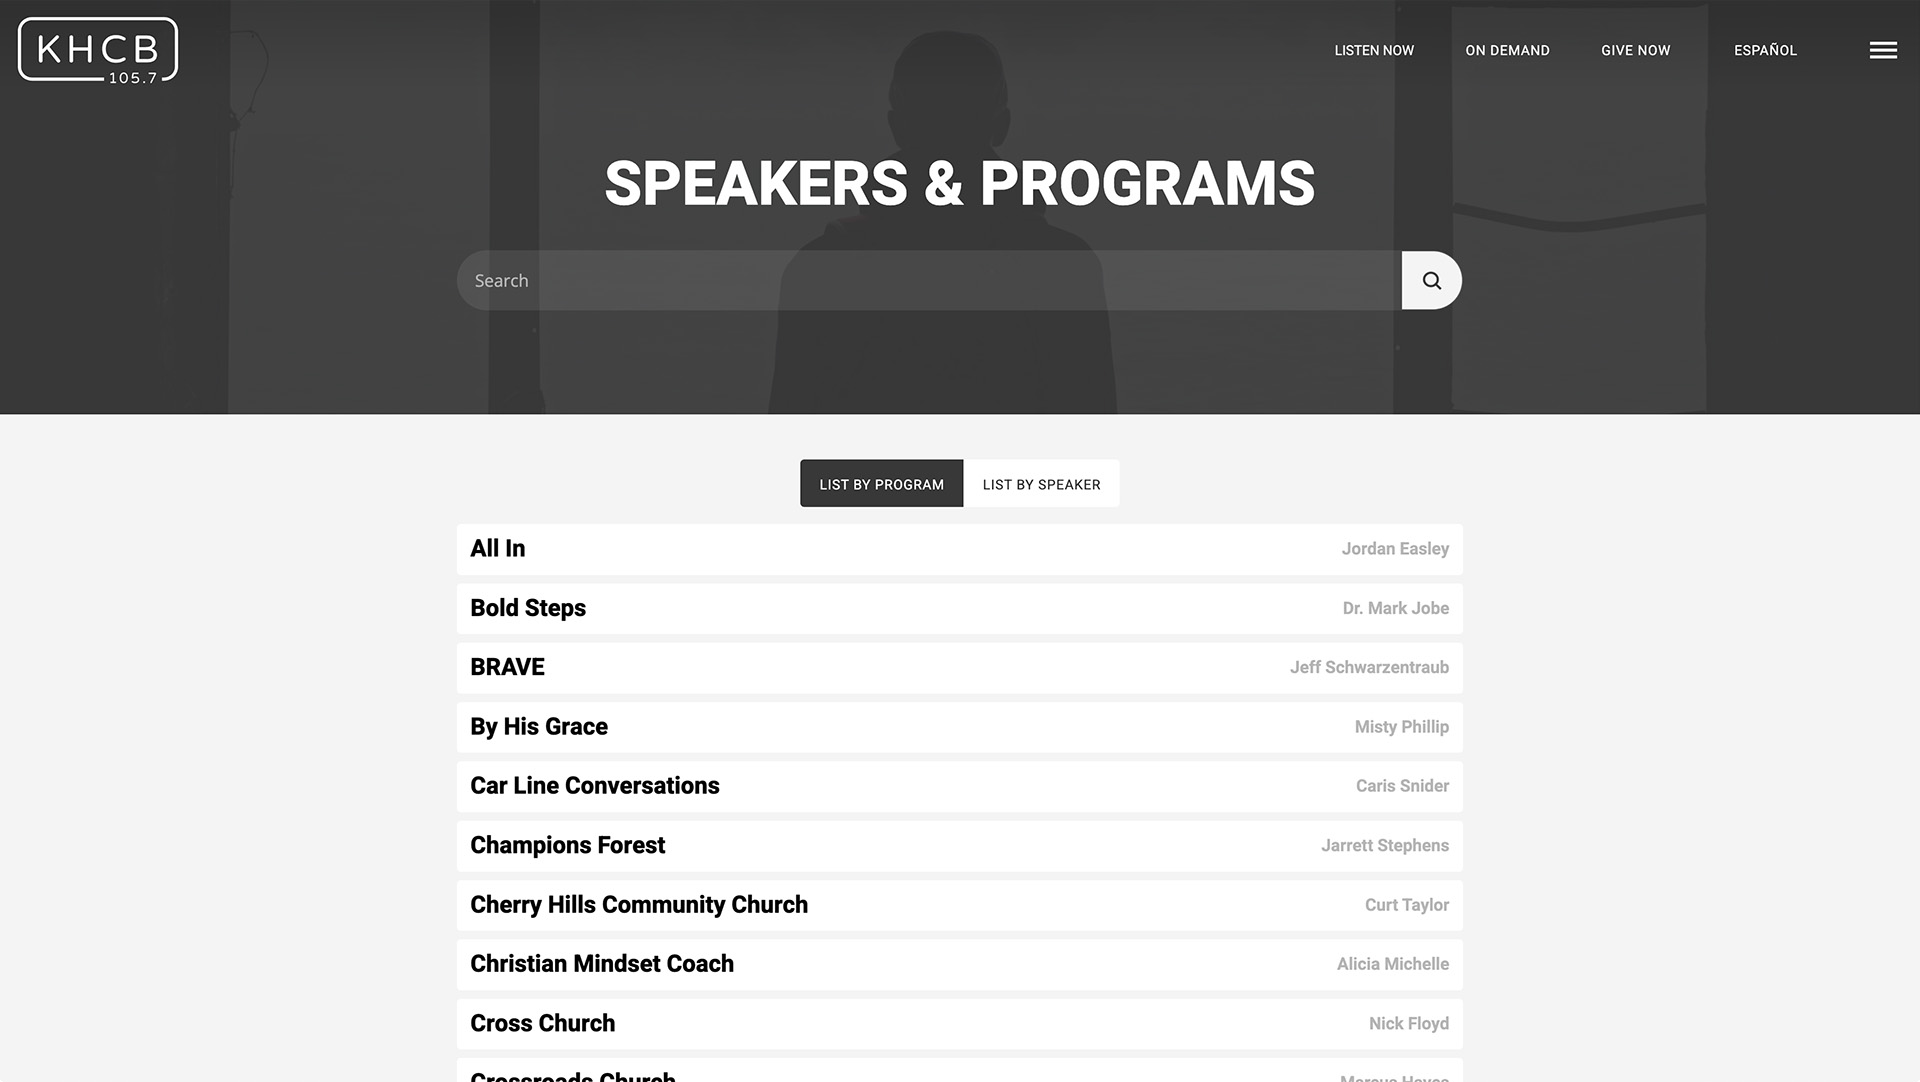 KHCB.org Speakers & Programs